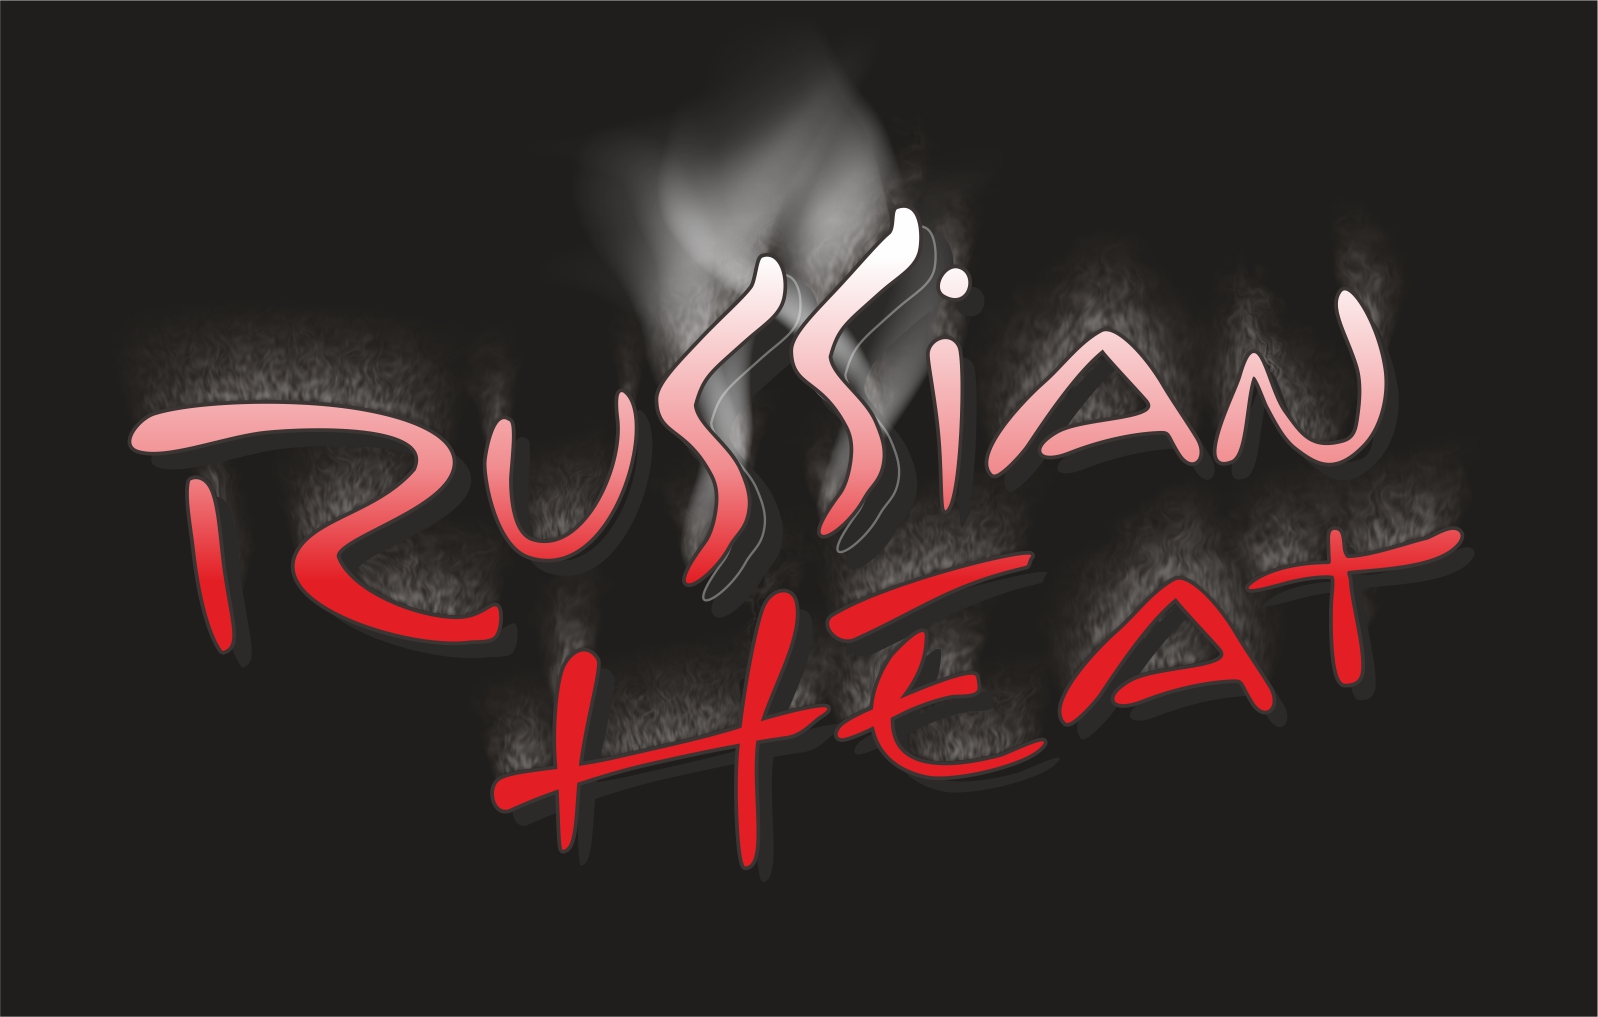 Russian Heat